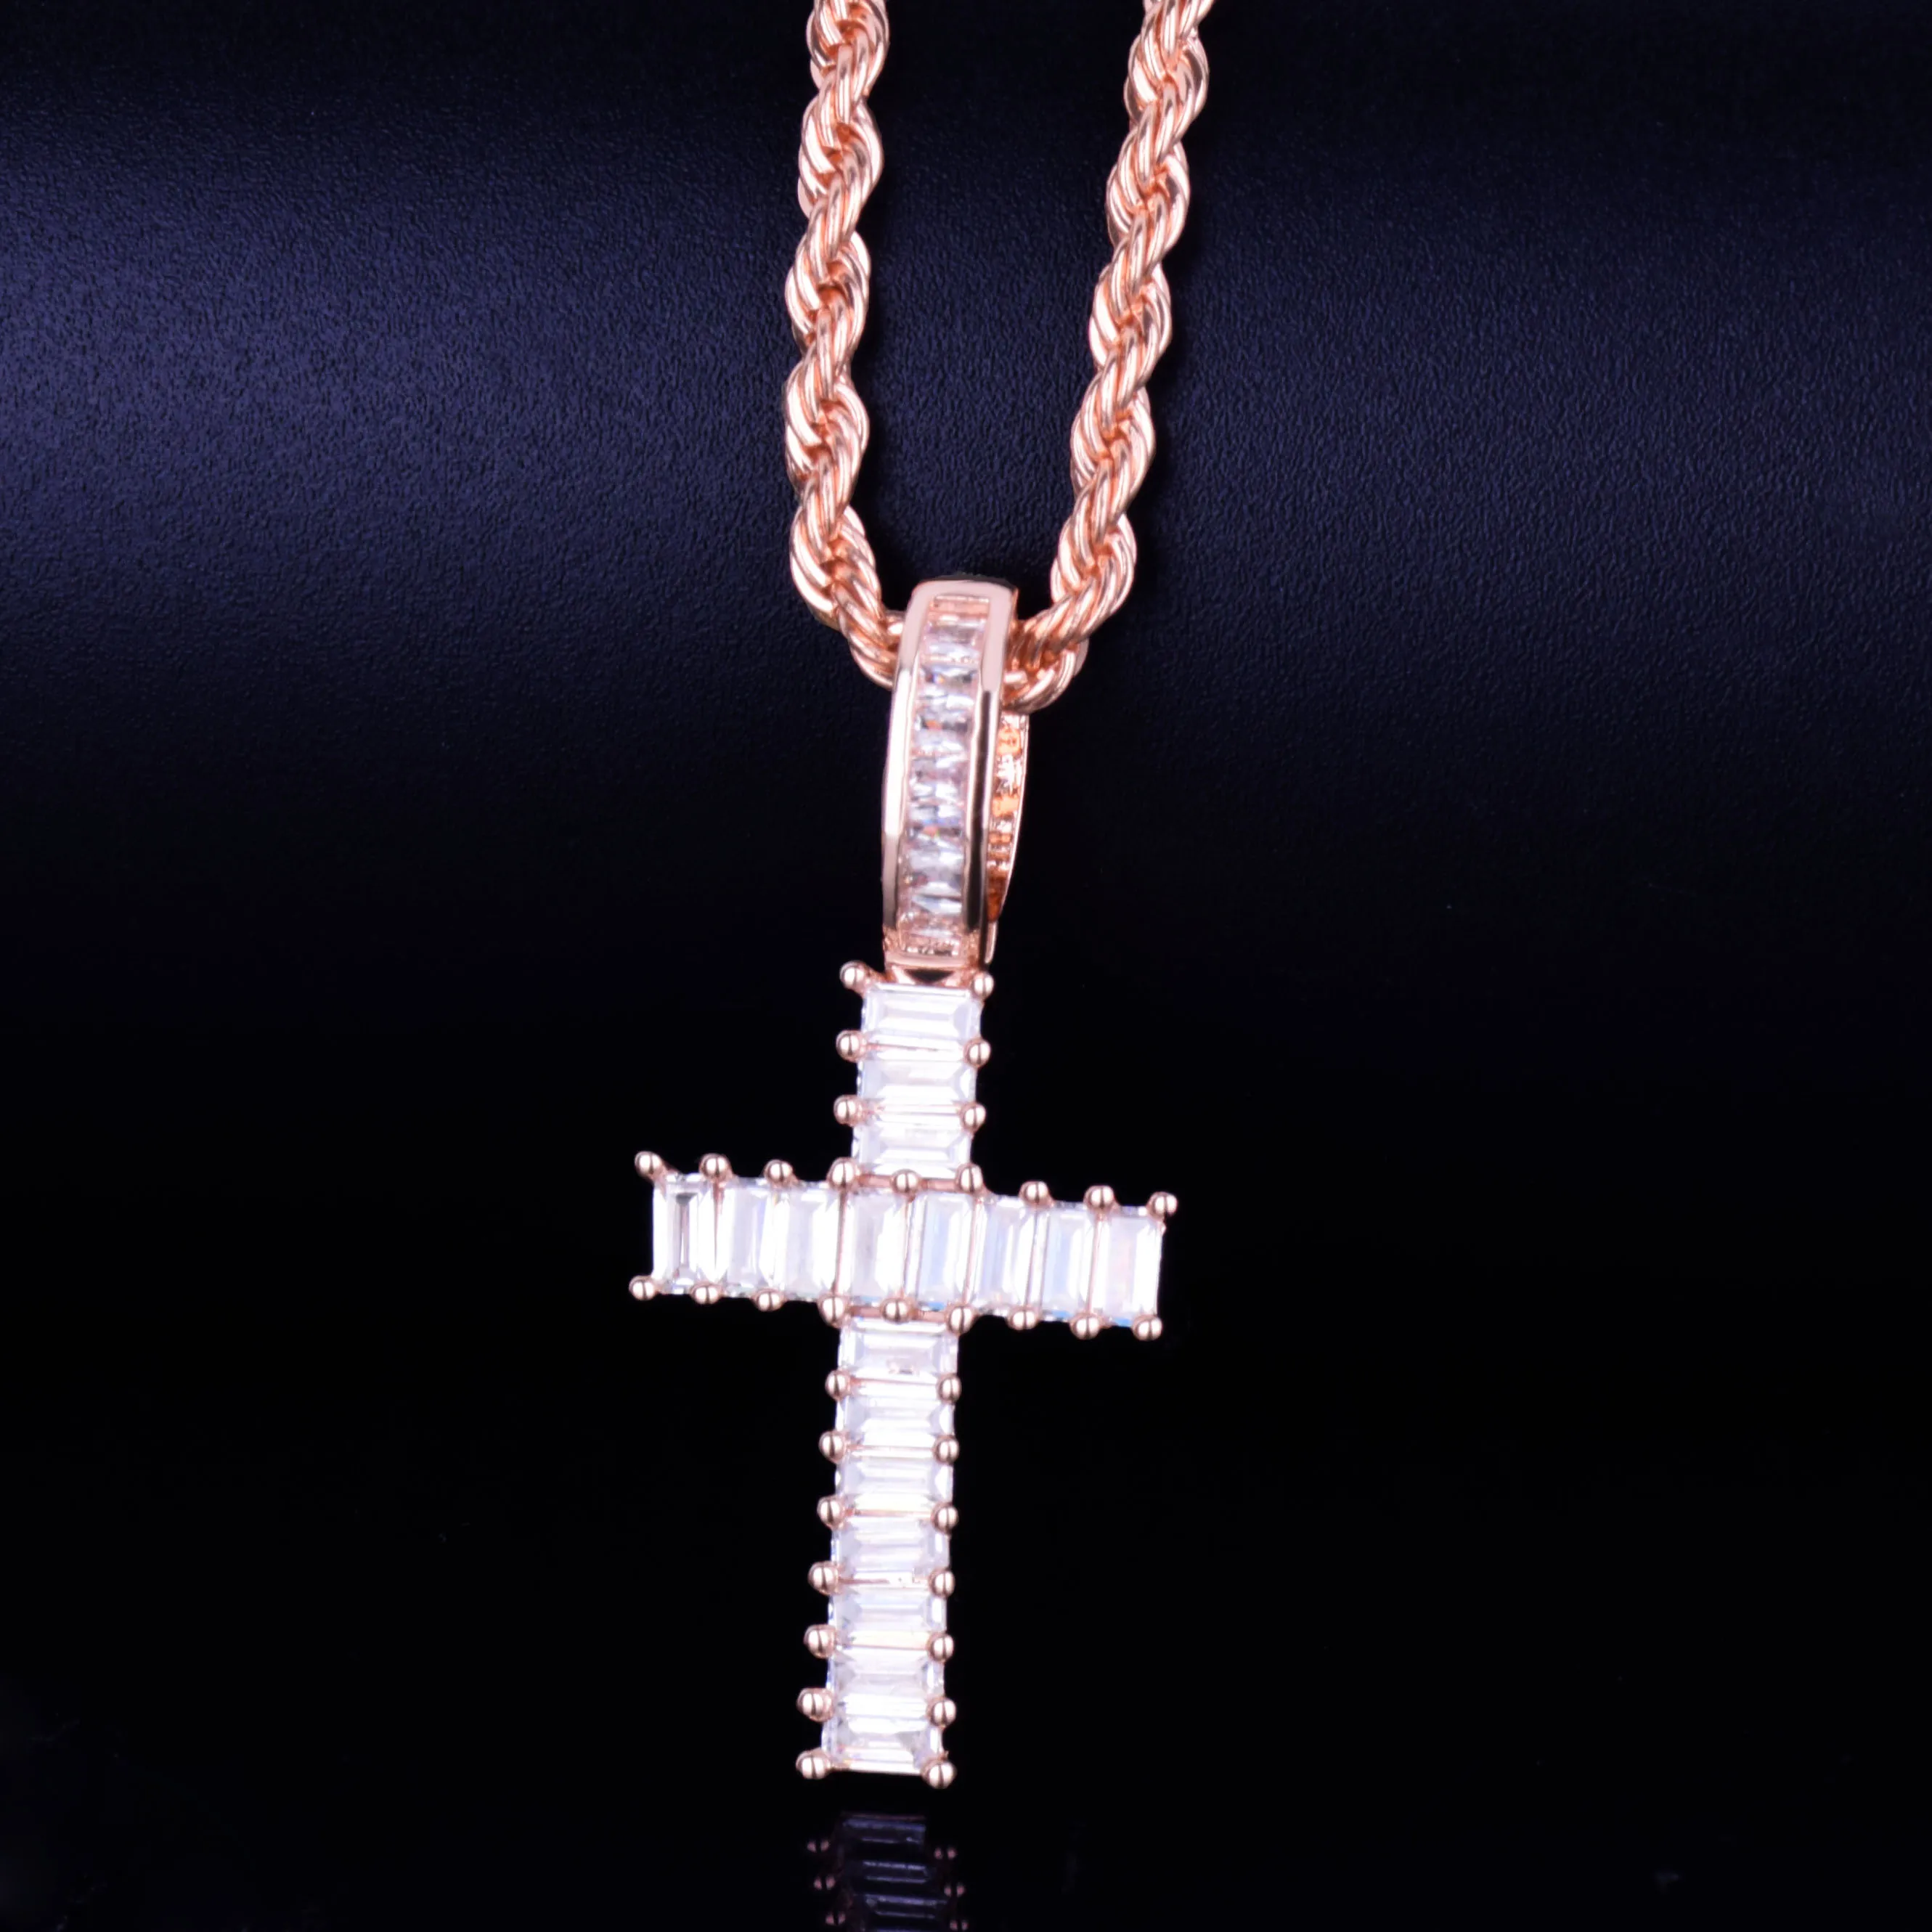 Мини багет крест кулон ожерелье с 4 мм теннисная Цепочка Золото Серебро AAA кубический циркон мужские и женские хип хоп рок ювелирные изделия